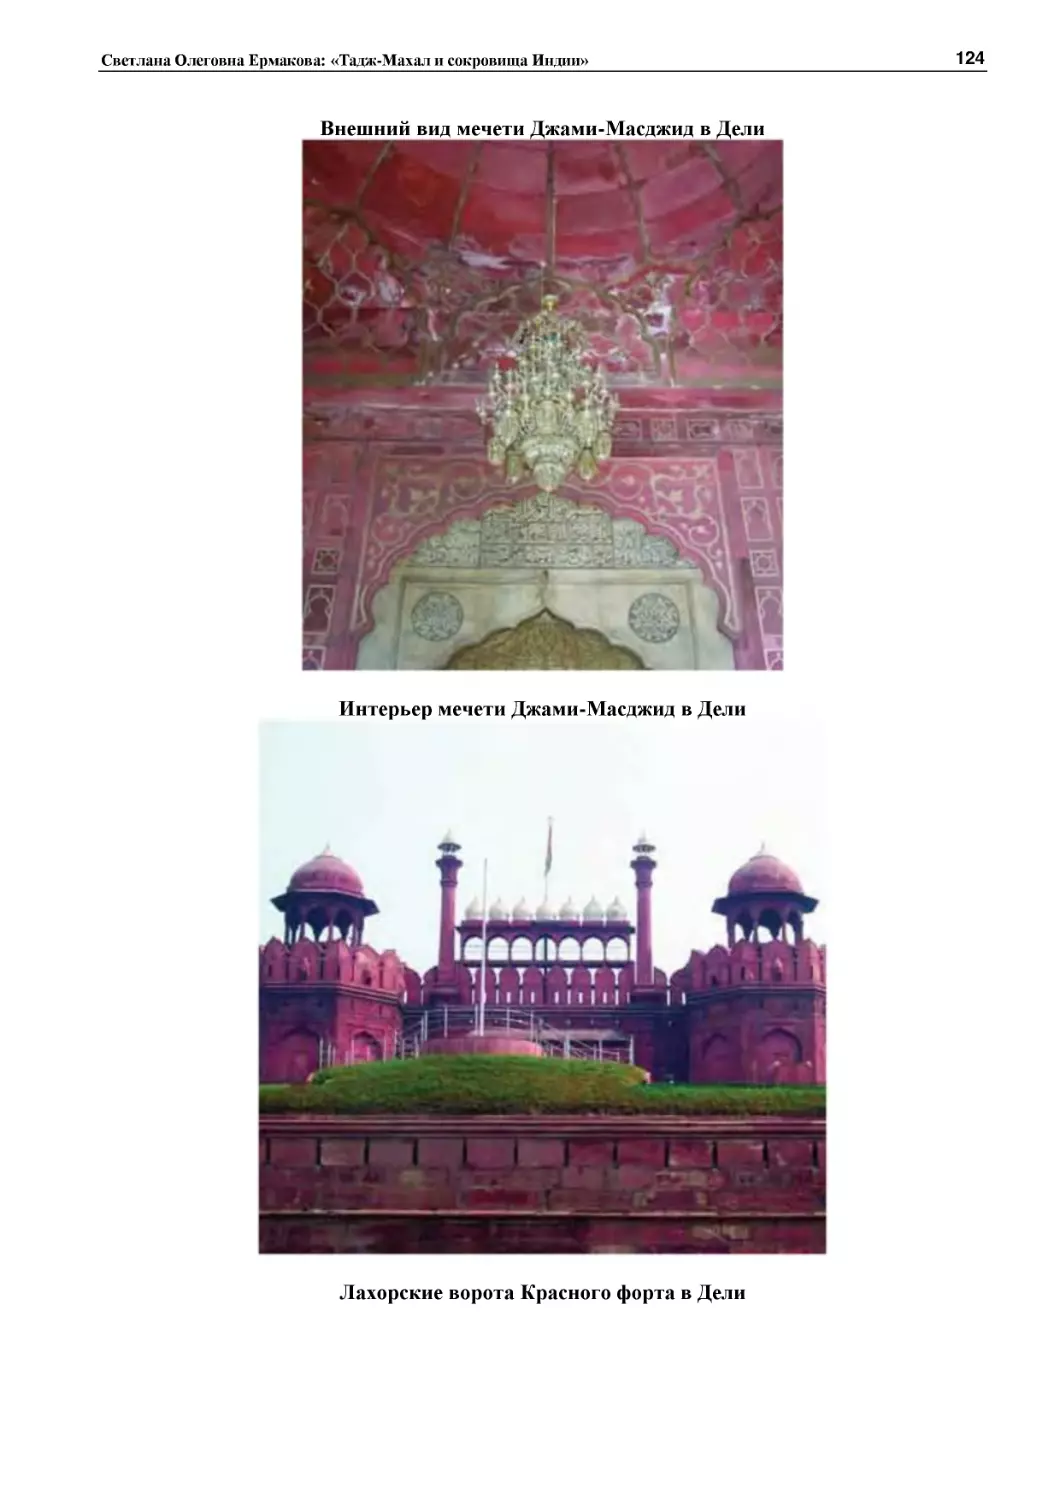 ﻿Внешний вид мечети Джами-Масджид в Дел
﻿Интерьер мечети Джами-Масджид в Дел
﻿Лахорские ворота Красного форта в Дел